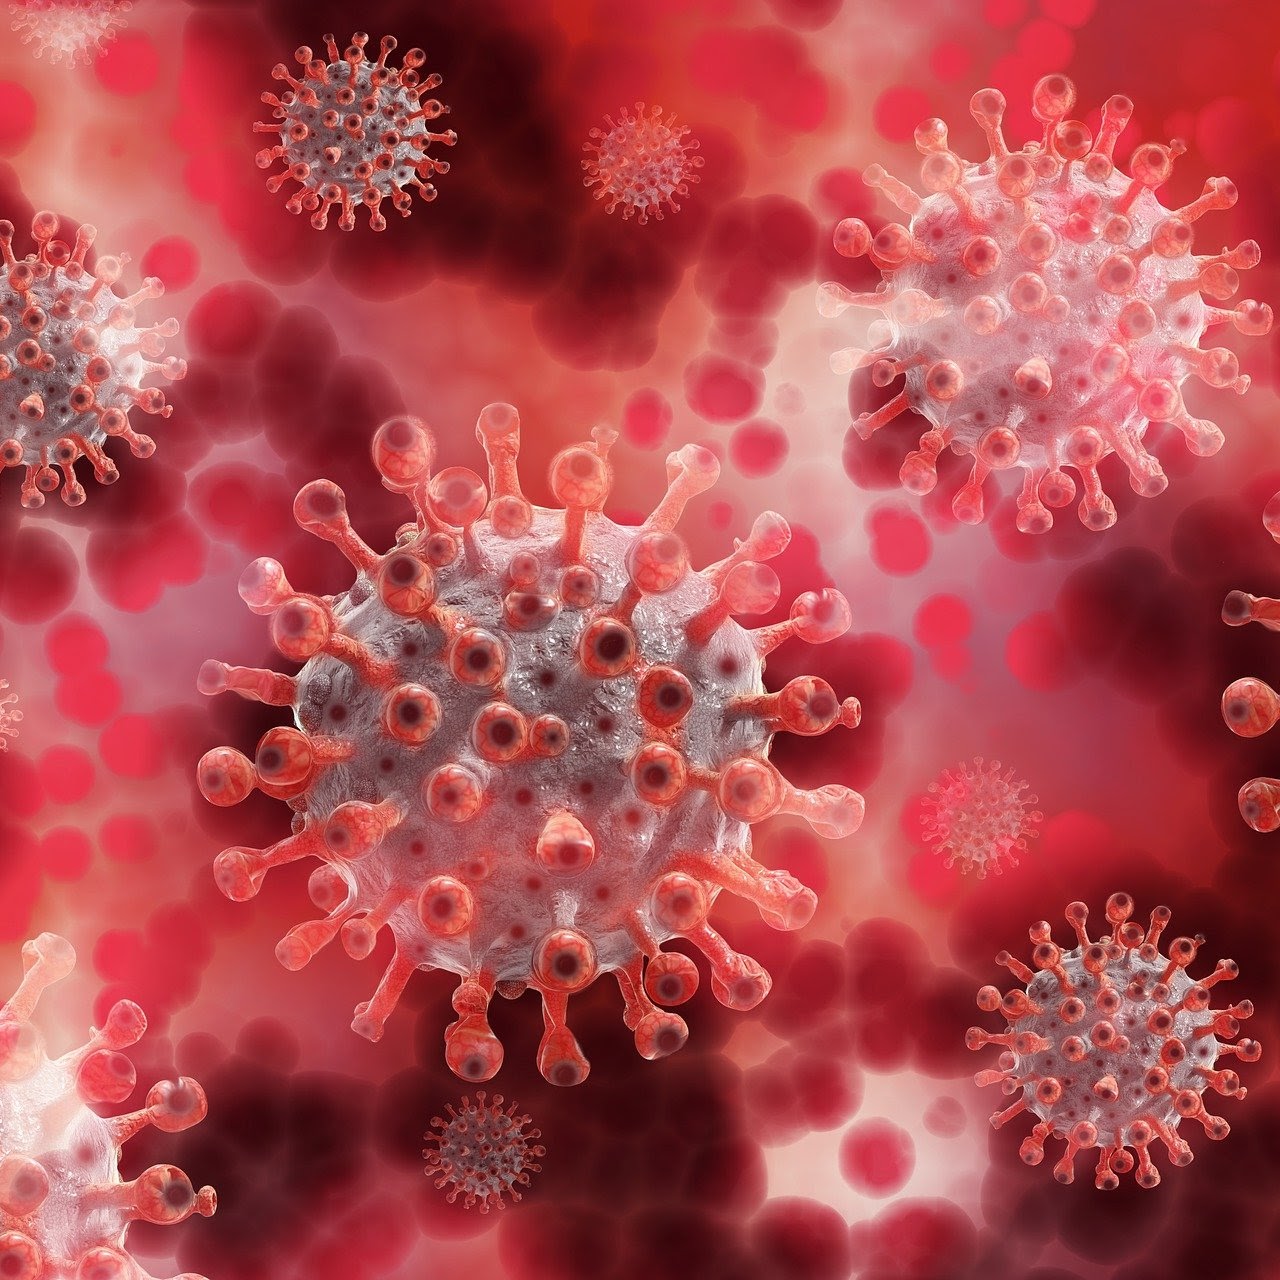 Corona-Virus: Dies sind die neuen Regeln